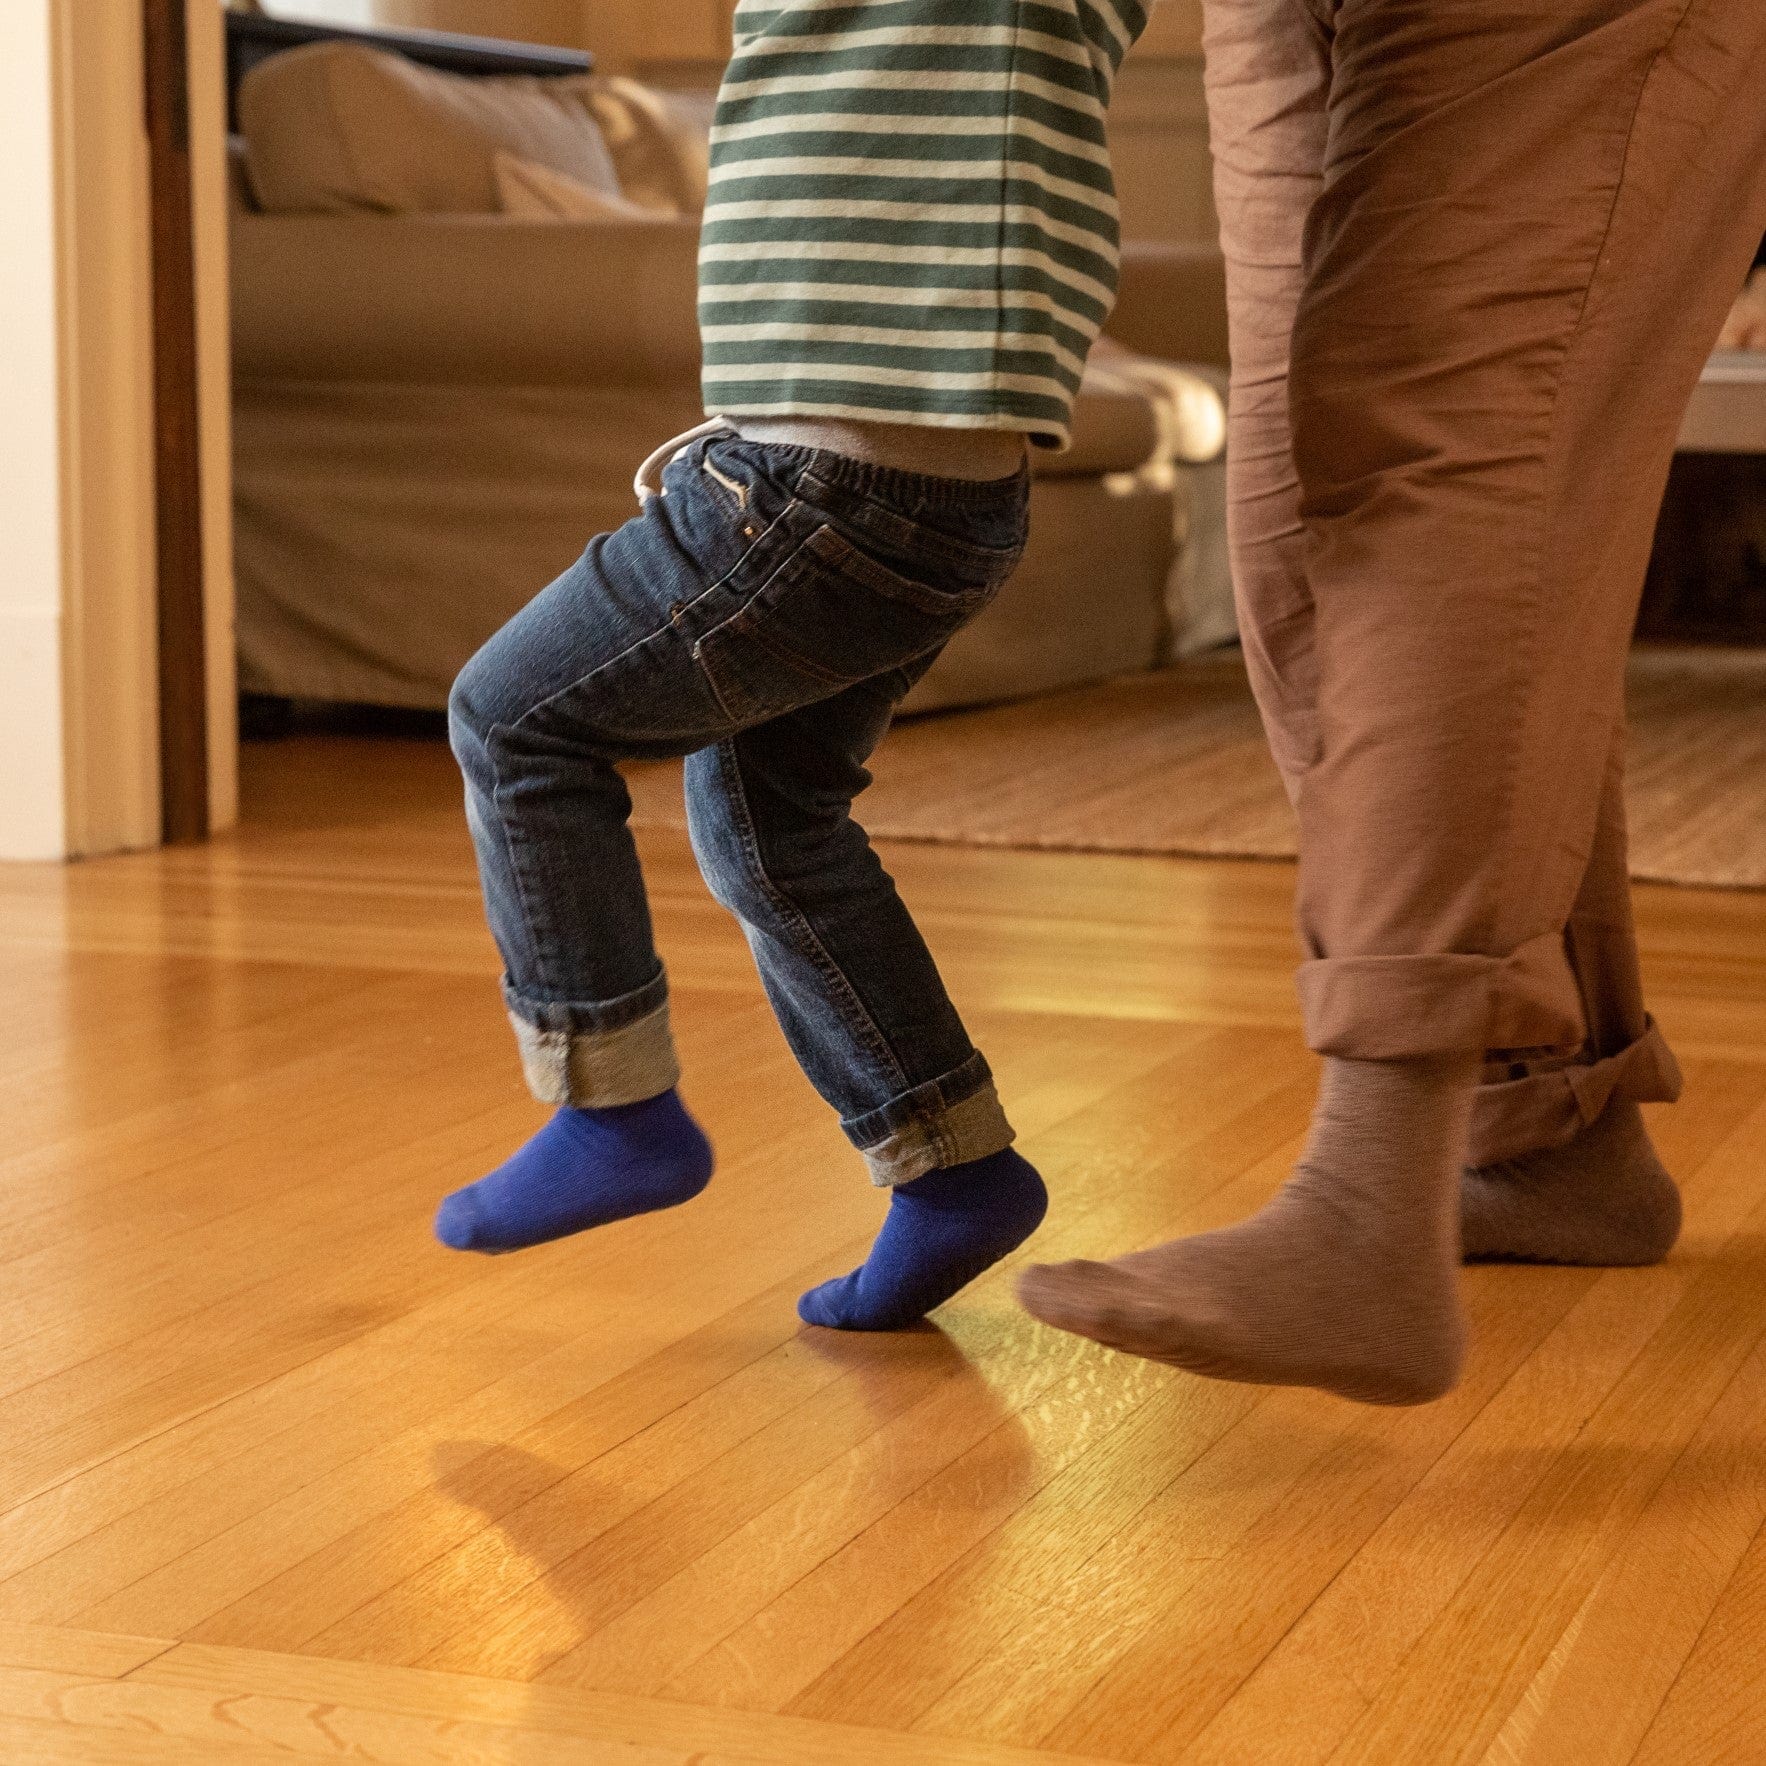 Gripjoy Socks Toddlers & Kids Green, Blue, Maroon Grip Socks - 4 pairs